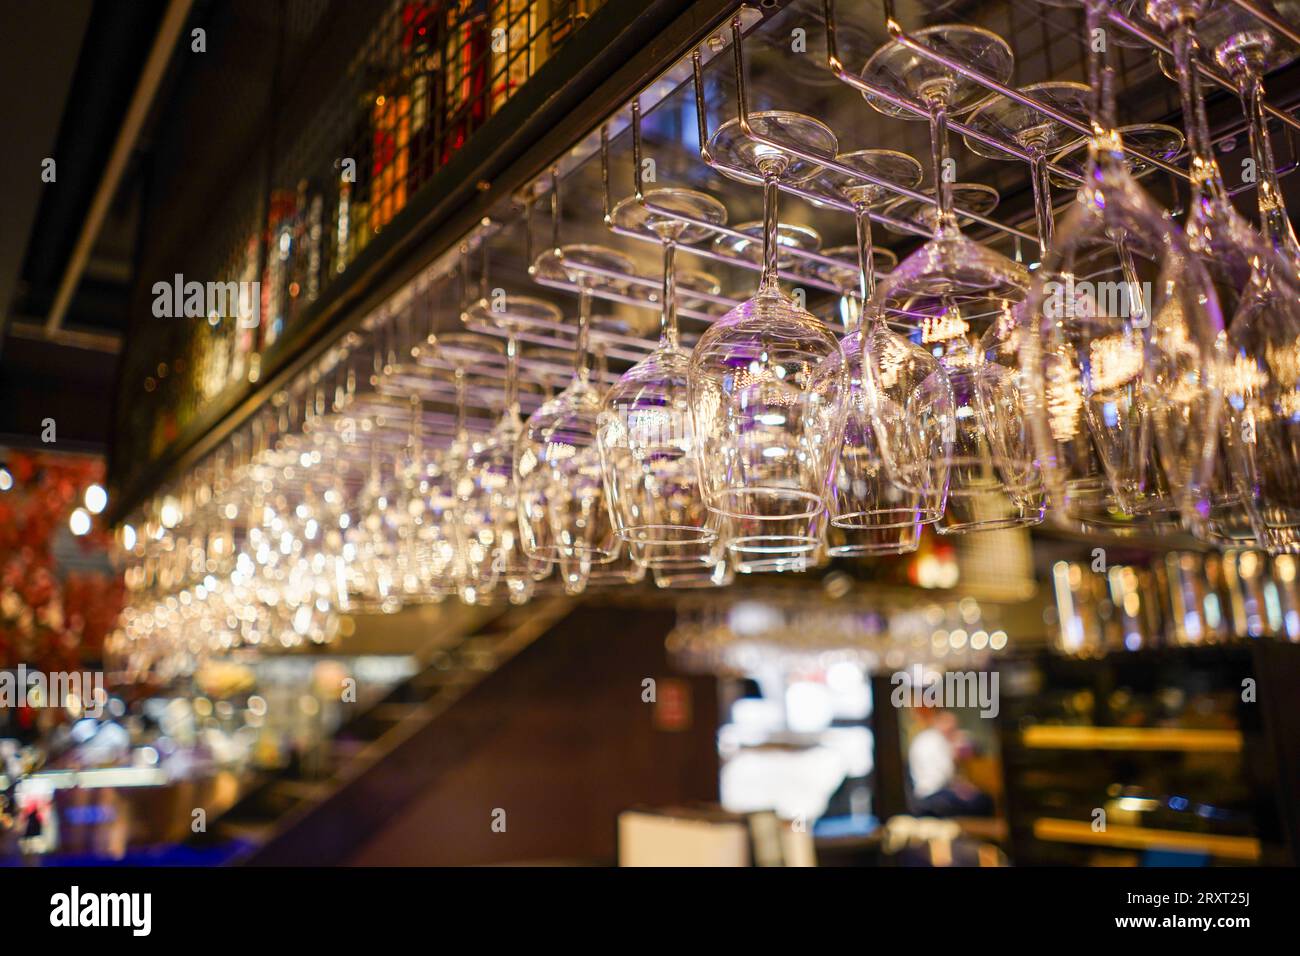 Cocktail Gläser auf einen Tresen mit einem beleuchteten Bar Schild im  Hintergrund Stockfotografie - Alamy